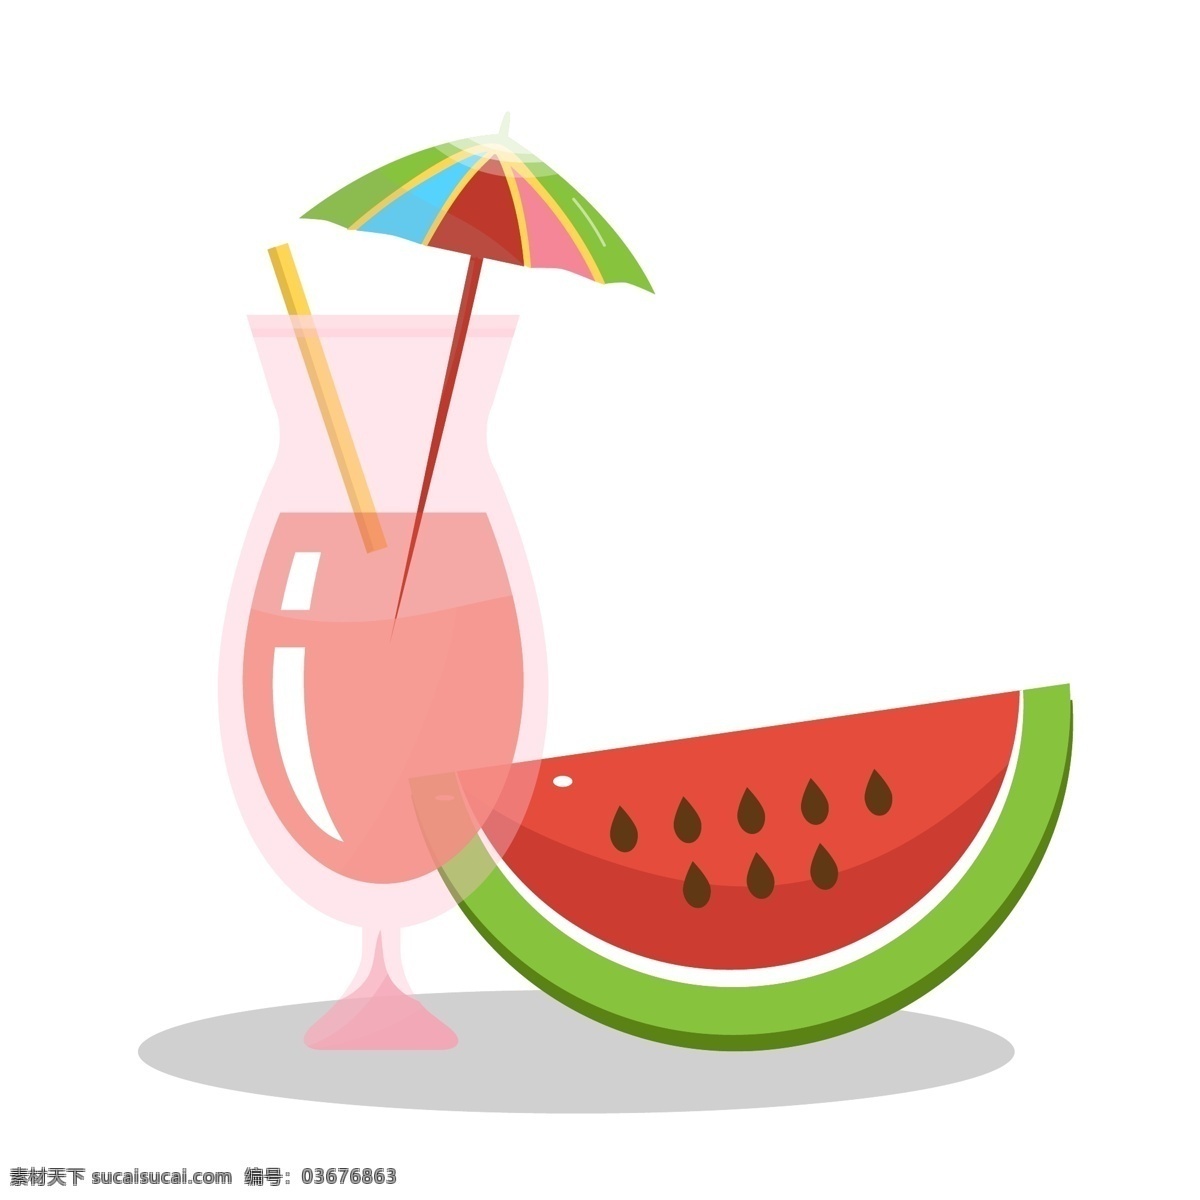 夏日 冷饮 手绘 矢量图 红色 西瓜 冰块 饮料 西瓜饮料 玻璃杯 夏天 小伞 度假 暑假 西瓜汁